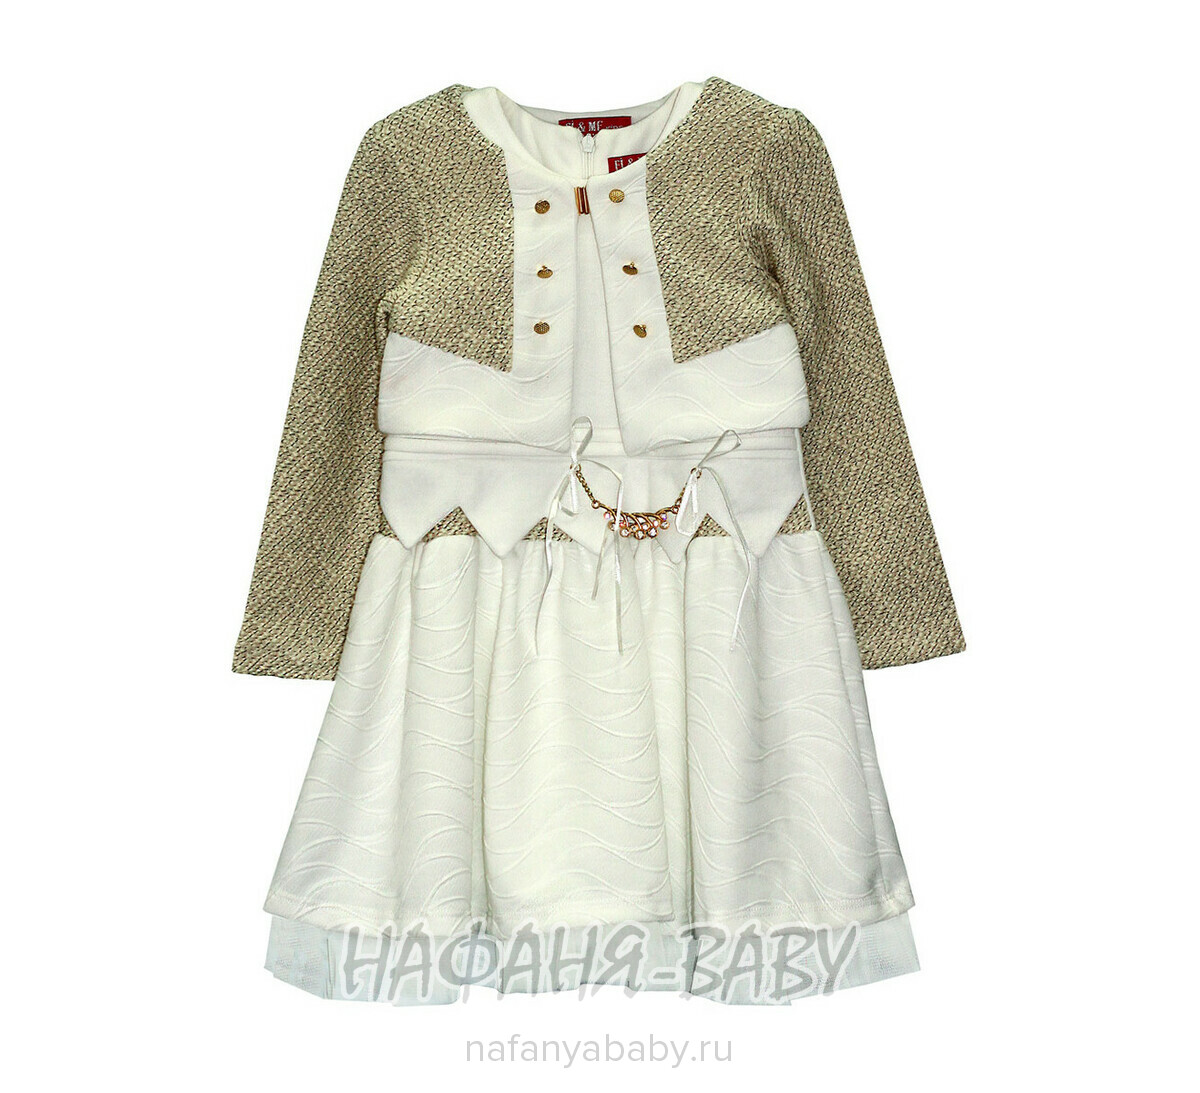 Детское платье+болеро FI & ME, купить в интернет магазине Нафаня. арт: 6002, цвет платье молочный болеро бежевый.